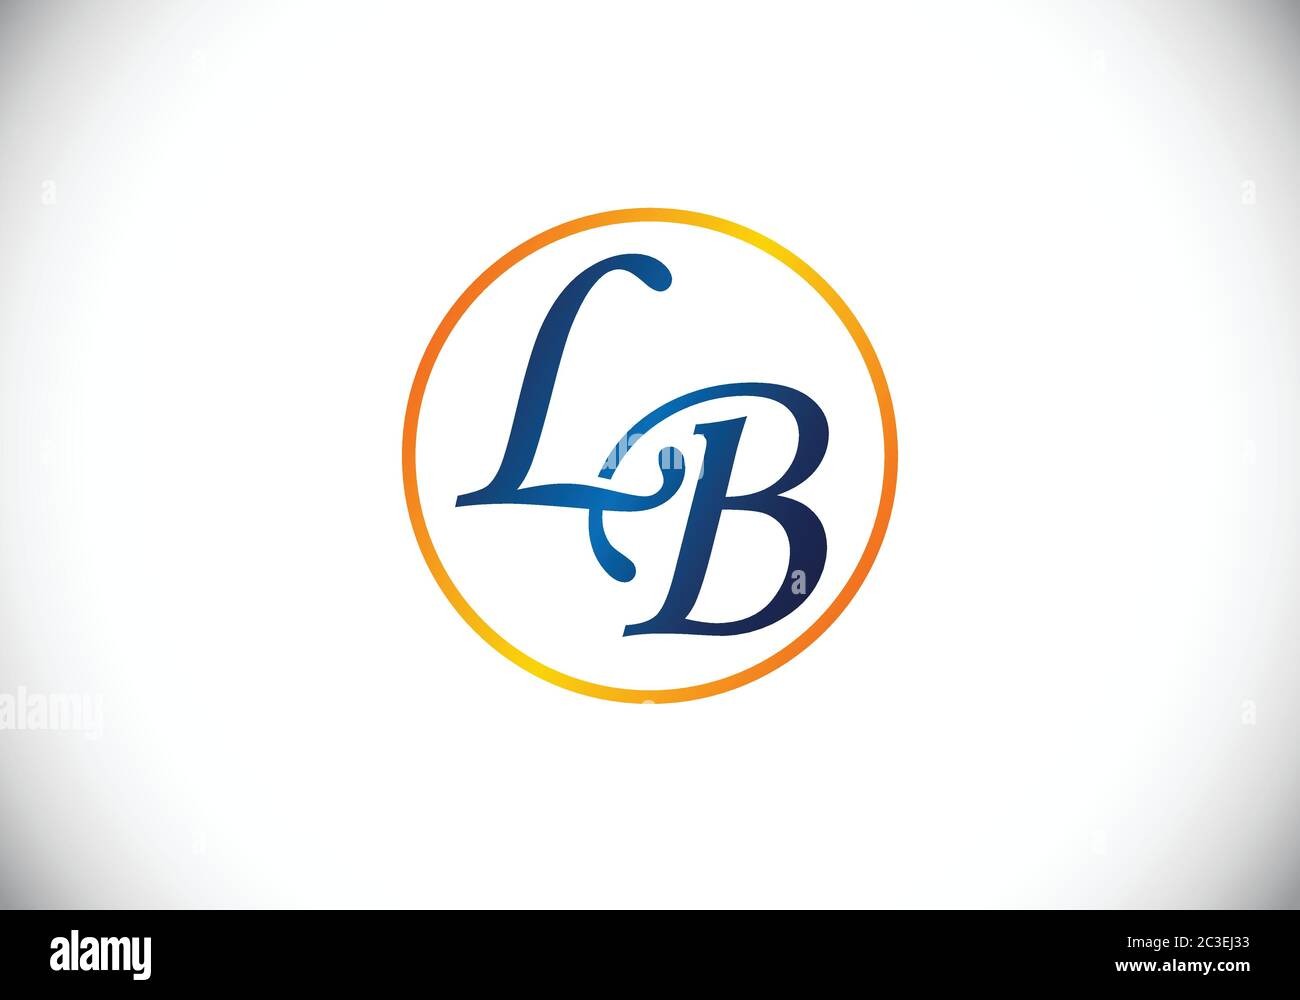 L&b